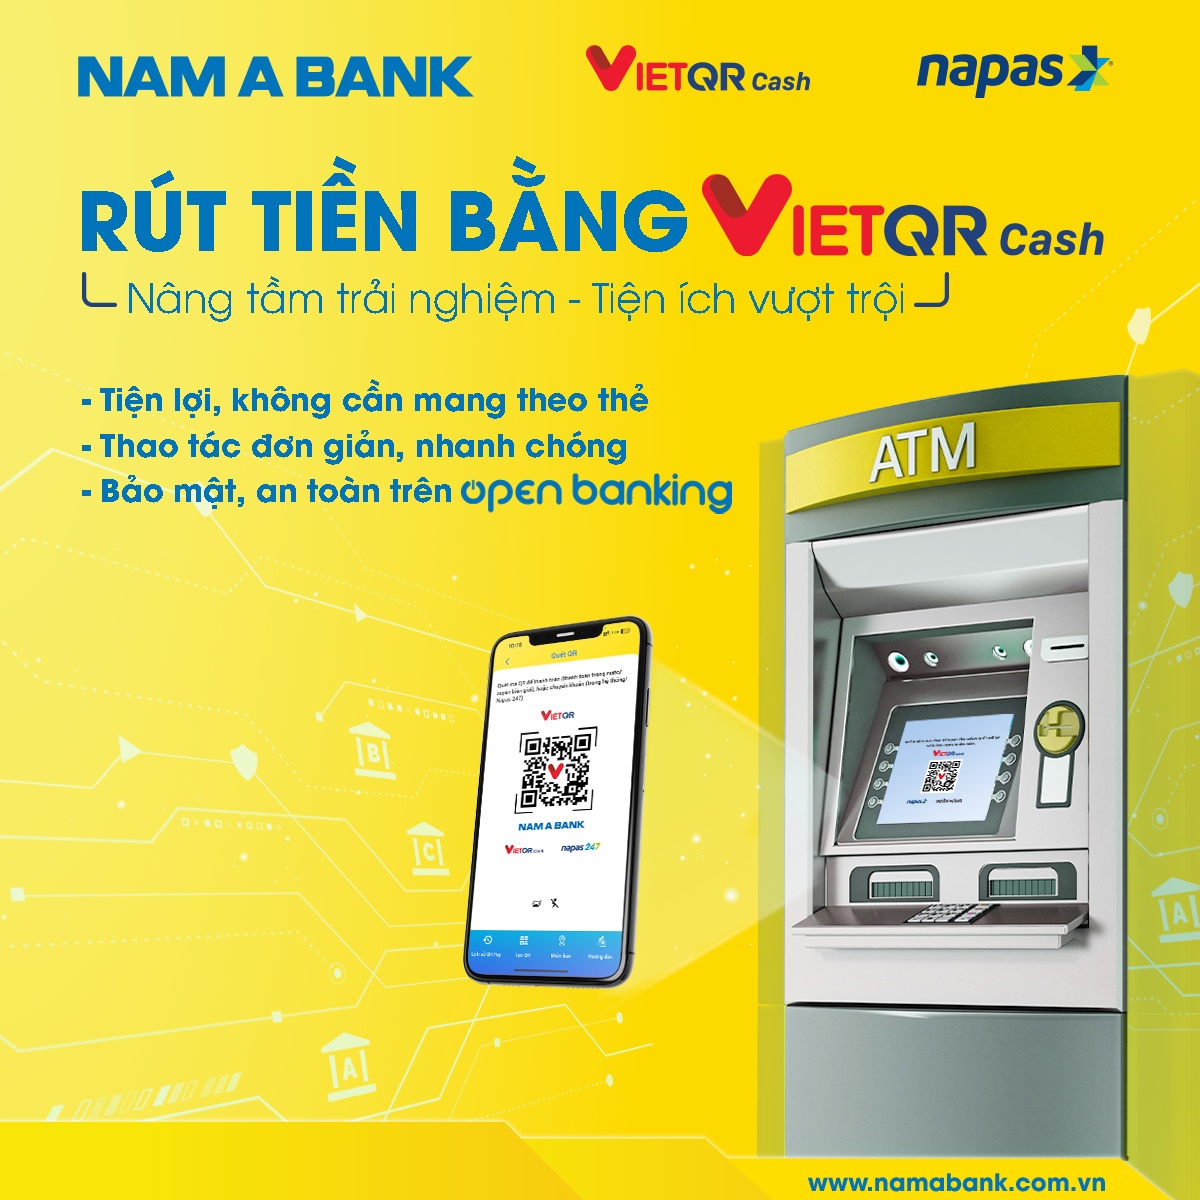 Nam A Bank tiên phong triển khai dịch vụ rút tiền bằng VietQR